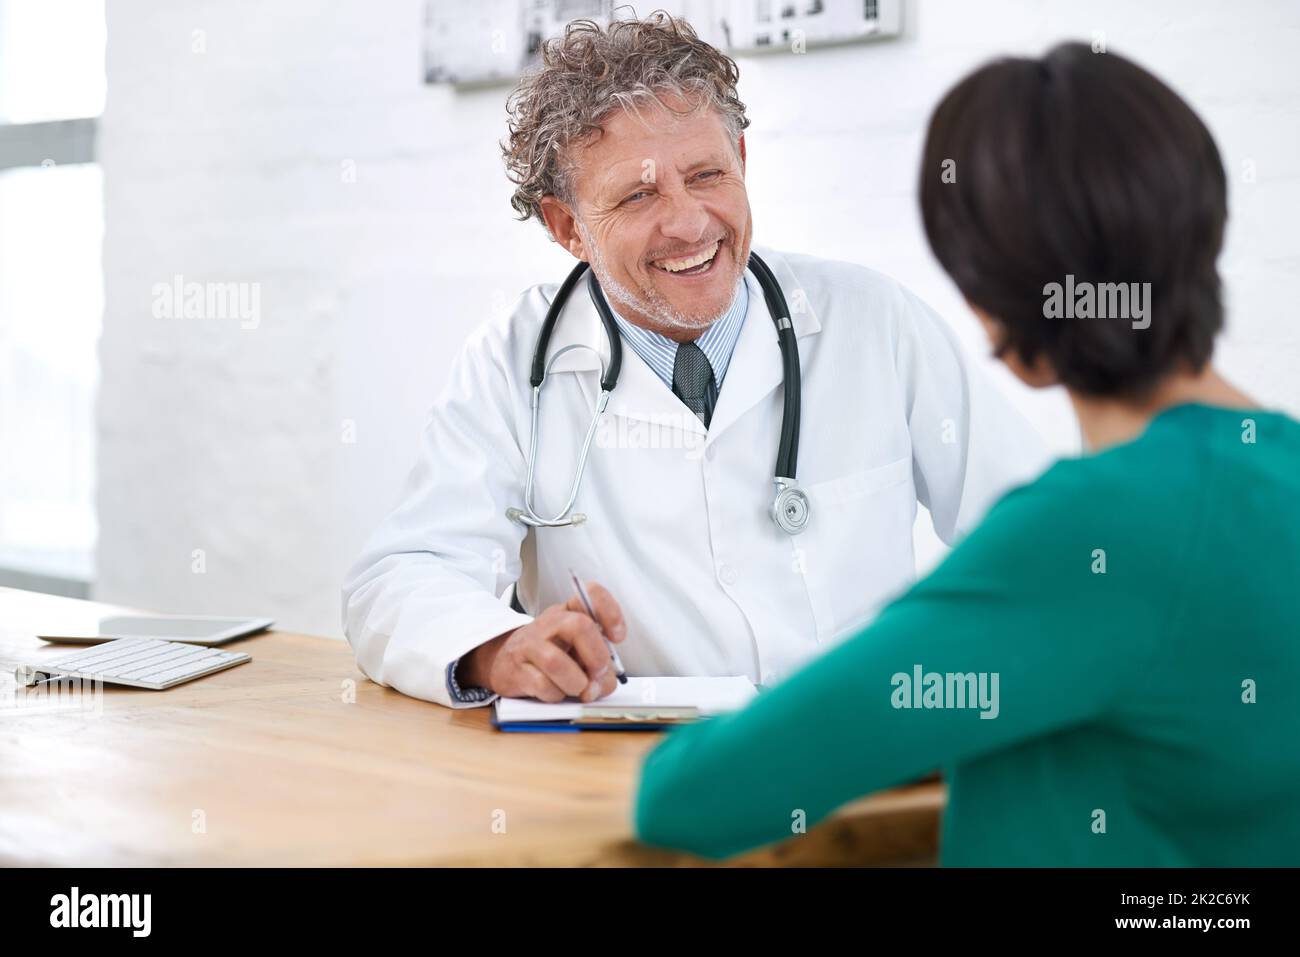 HES ha ottenuto un modo meraviglioso del comodino. Shot di un medico maturo sorridente che ha una consultazione con un paziente. Foto Stock